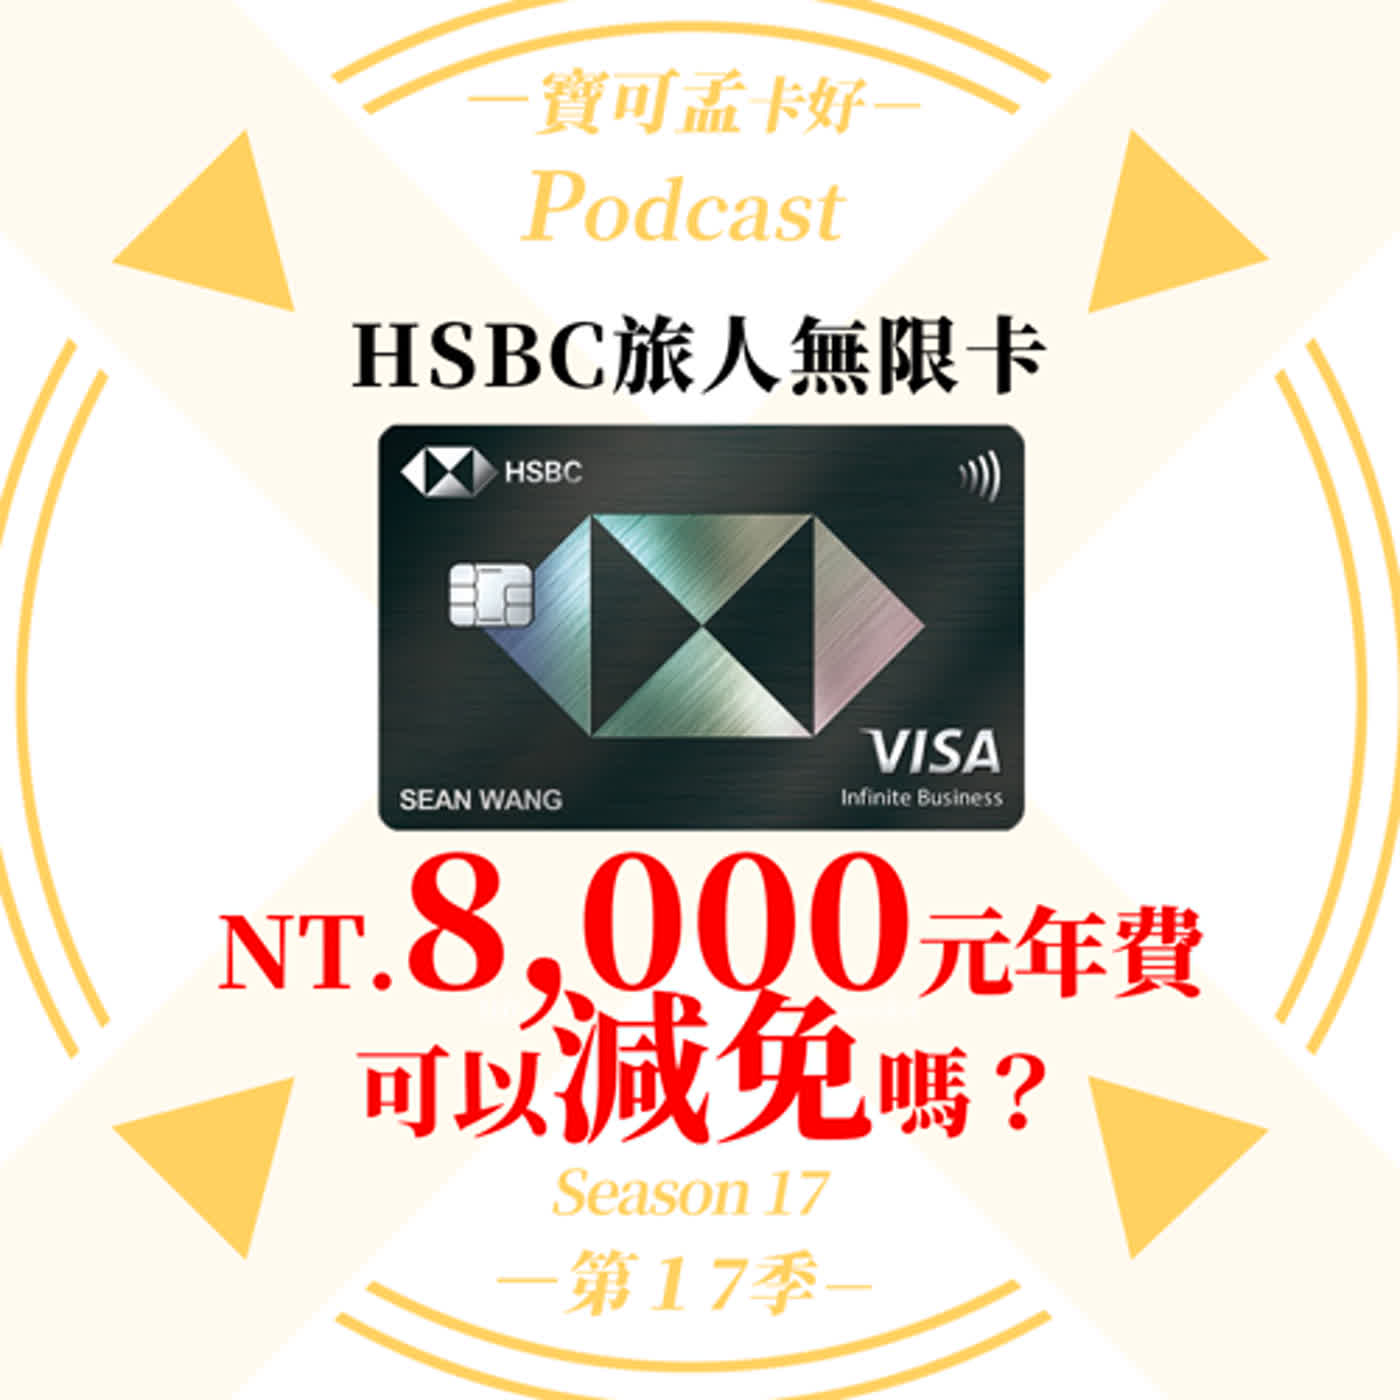 【信用卡】HSBC旅人無限卡的NT.8,000元年費，可以減免嗎？粉絲分享超級Data Point來囉！｜寶可孟卡好S17EP02